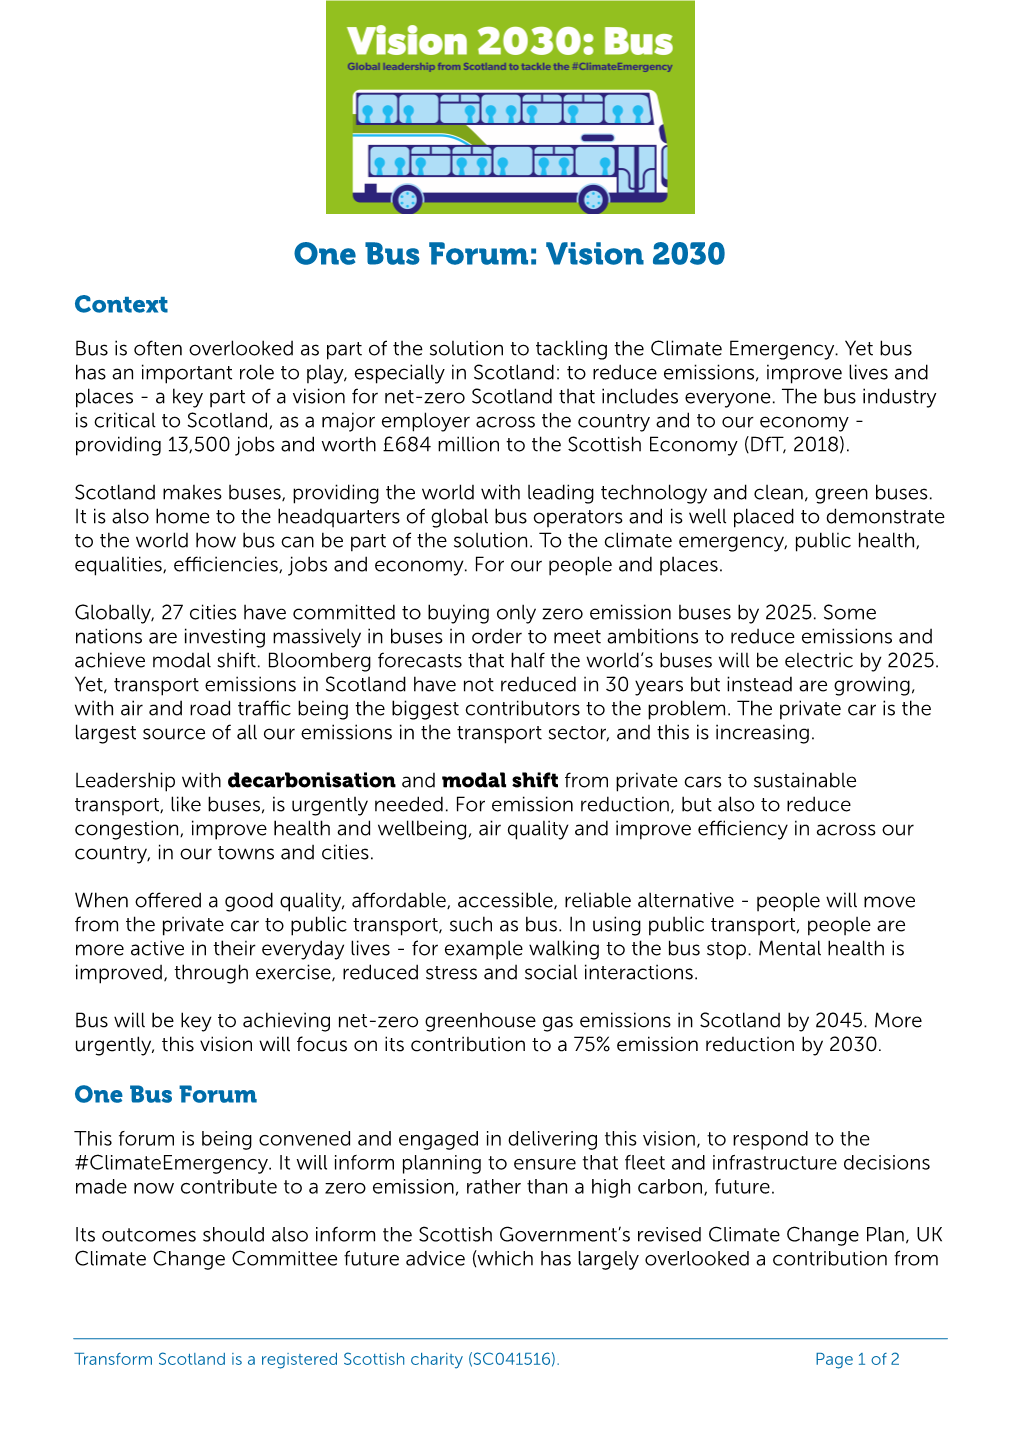 Vision 2030 Bus Briefing Jan 2020 31